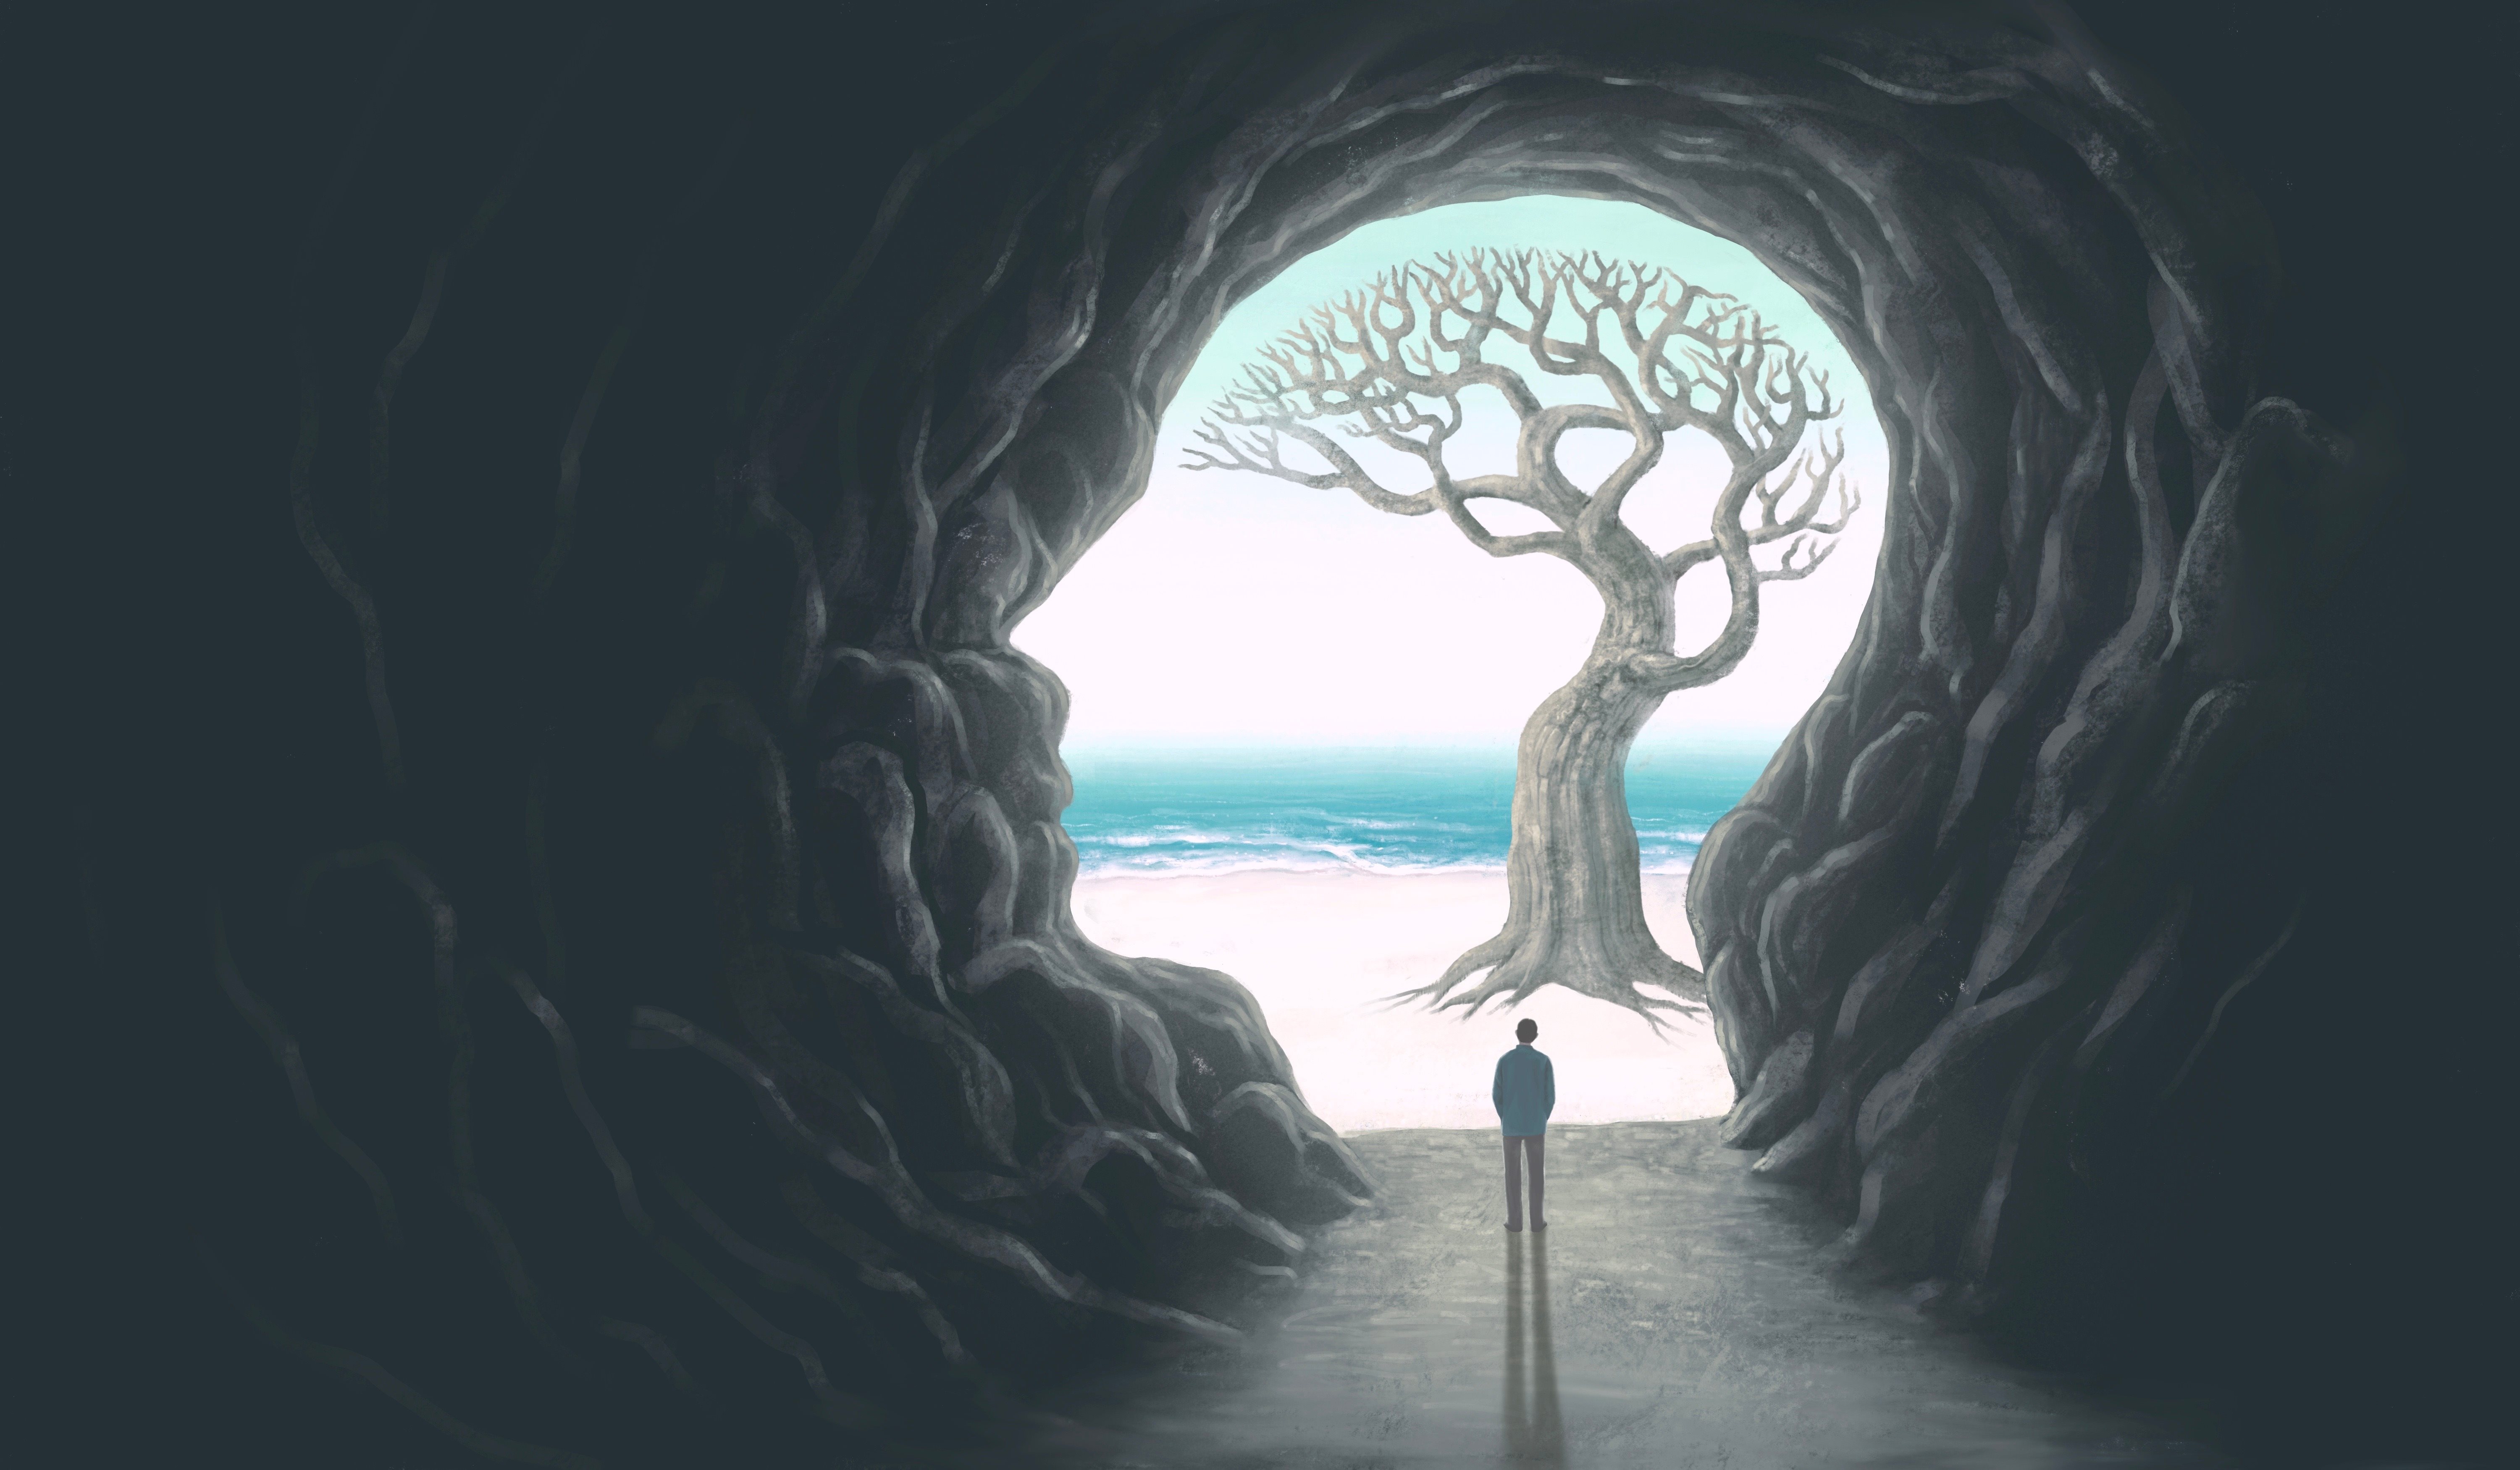 Arrière-plan: un arbre avec branches et racines, dessiné dans la silhouette d'une tête de profil; avant-plan: une personne devant l'arbre